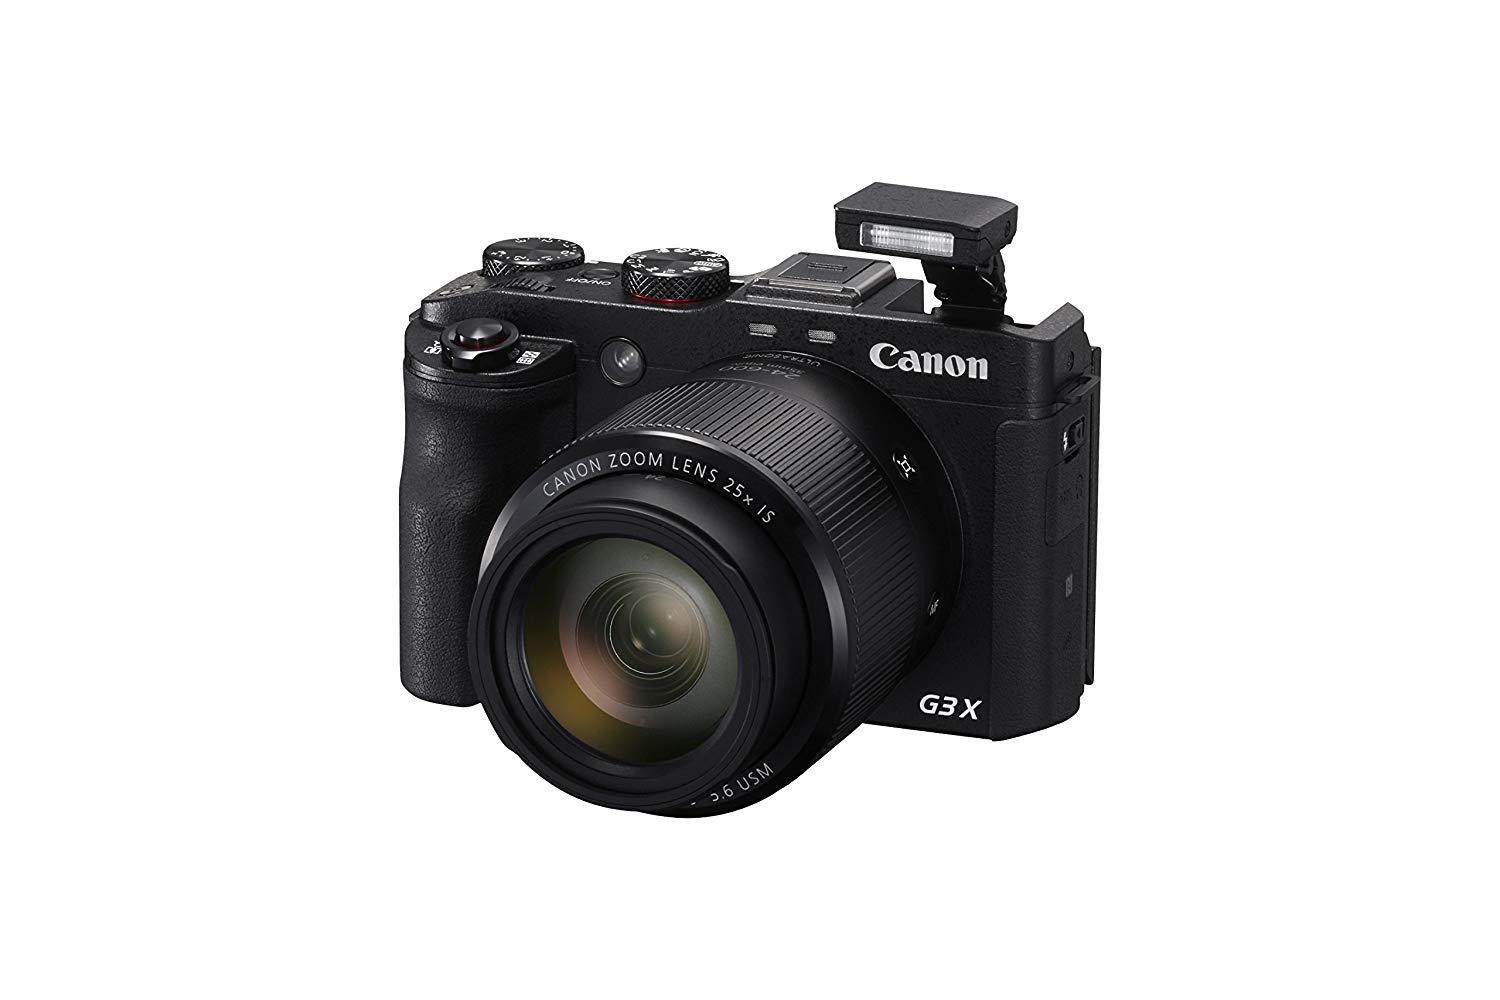 Canon كاميرا PowerShot G3 X الرقمية - مزودة بتقنية Wi-Fi